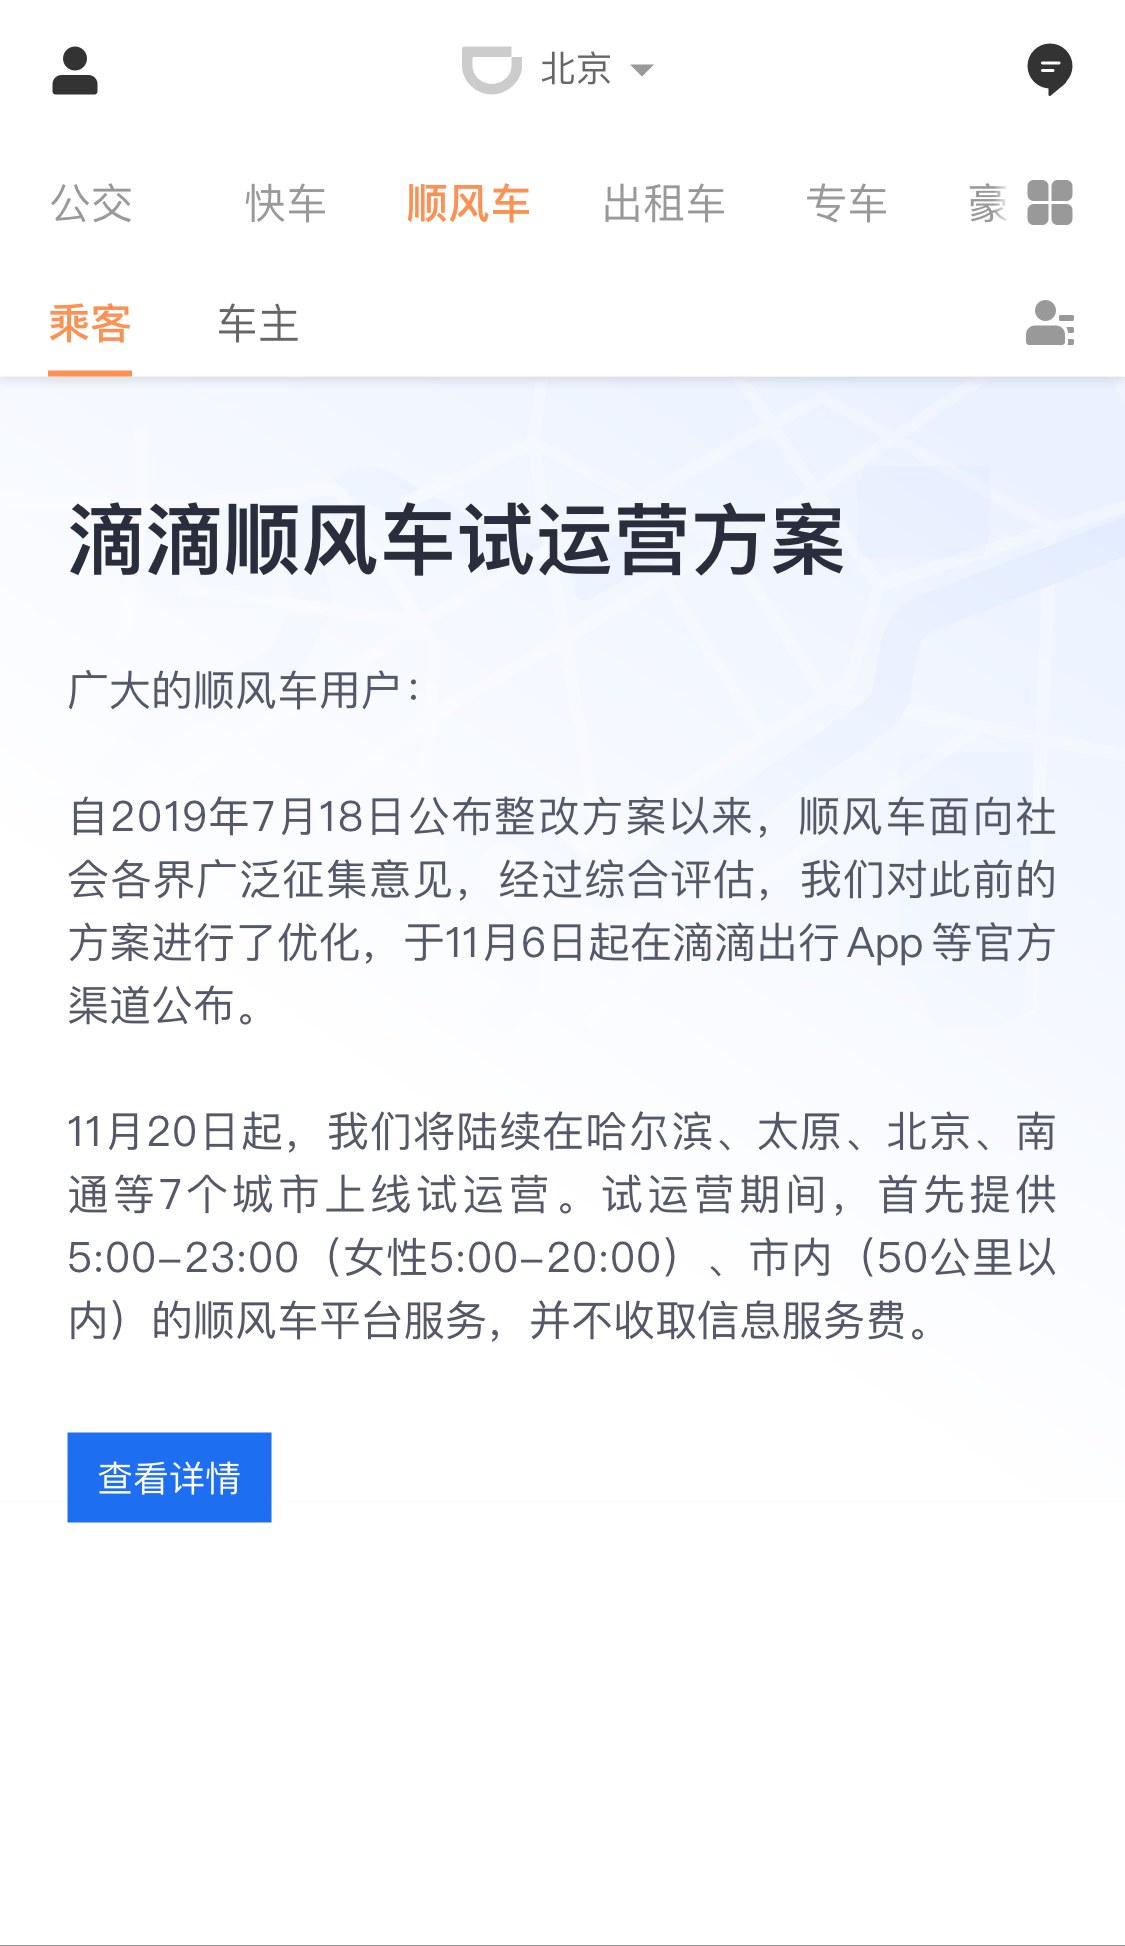 滴滴顺风车宣布将在11月下旬起陆续在哈尔滨、北京等7城上线试运营